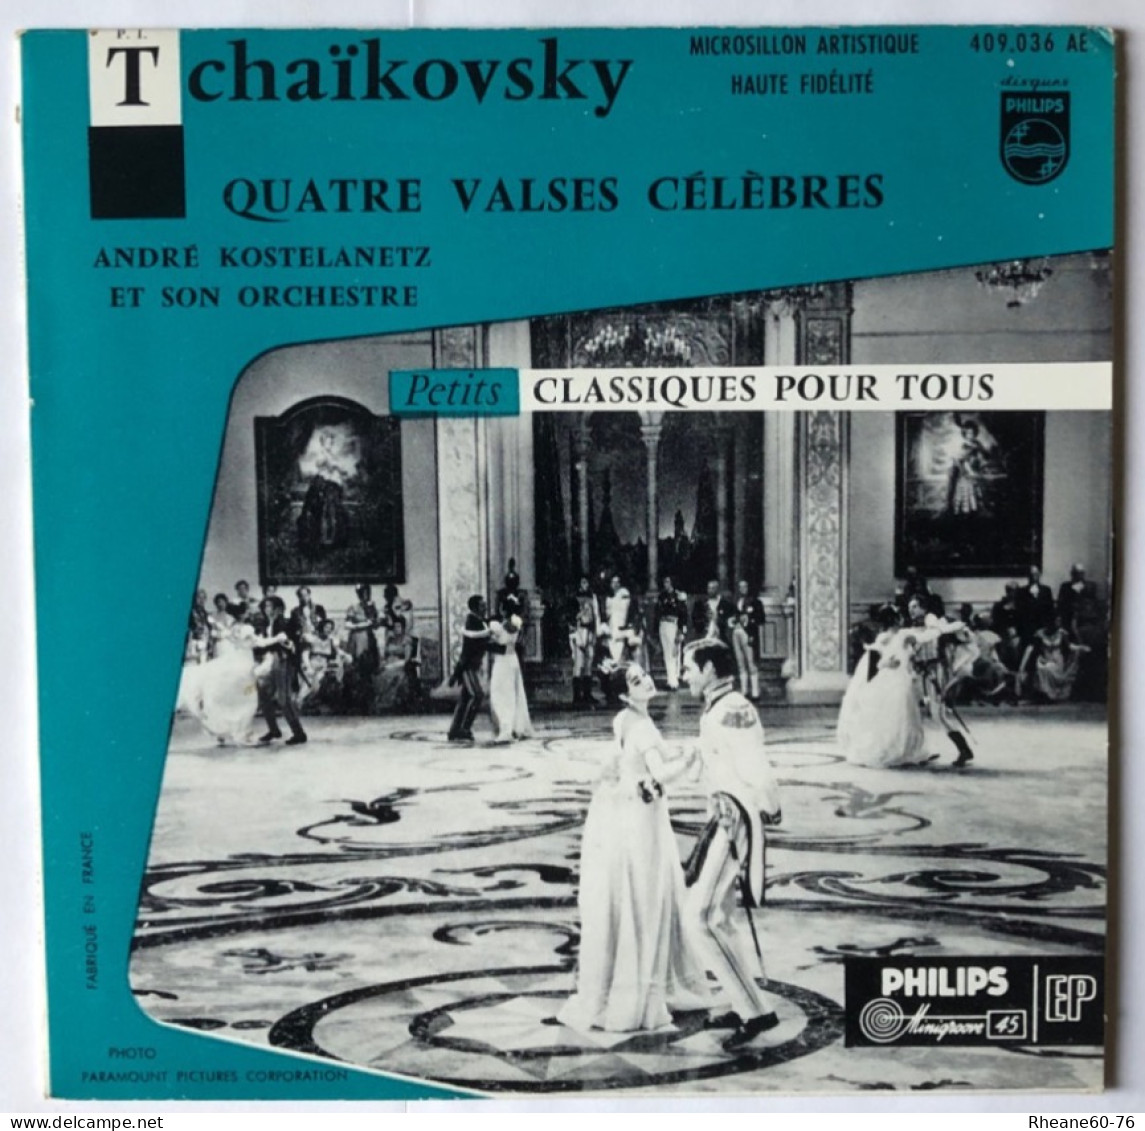 Philips 409.036 AE - 45T EP - Tchaïkovsky 4 Valses A Kostelanetz Et Son Orchestre- Microsillon Artistique Haute Fidélité - Formatos Especiales